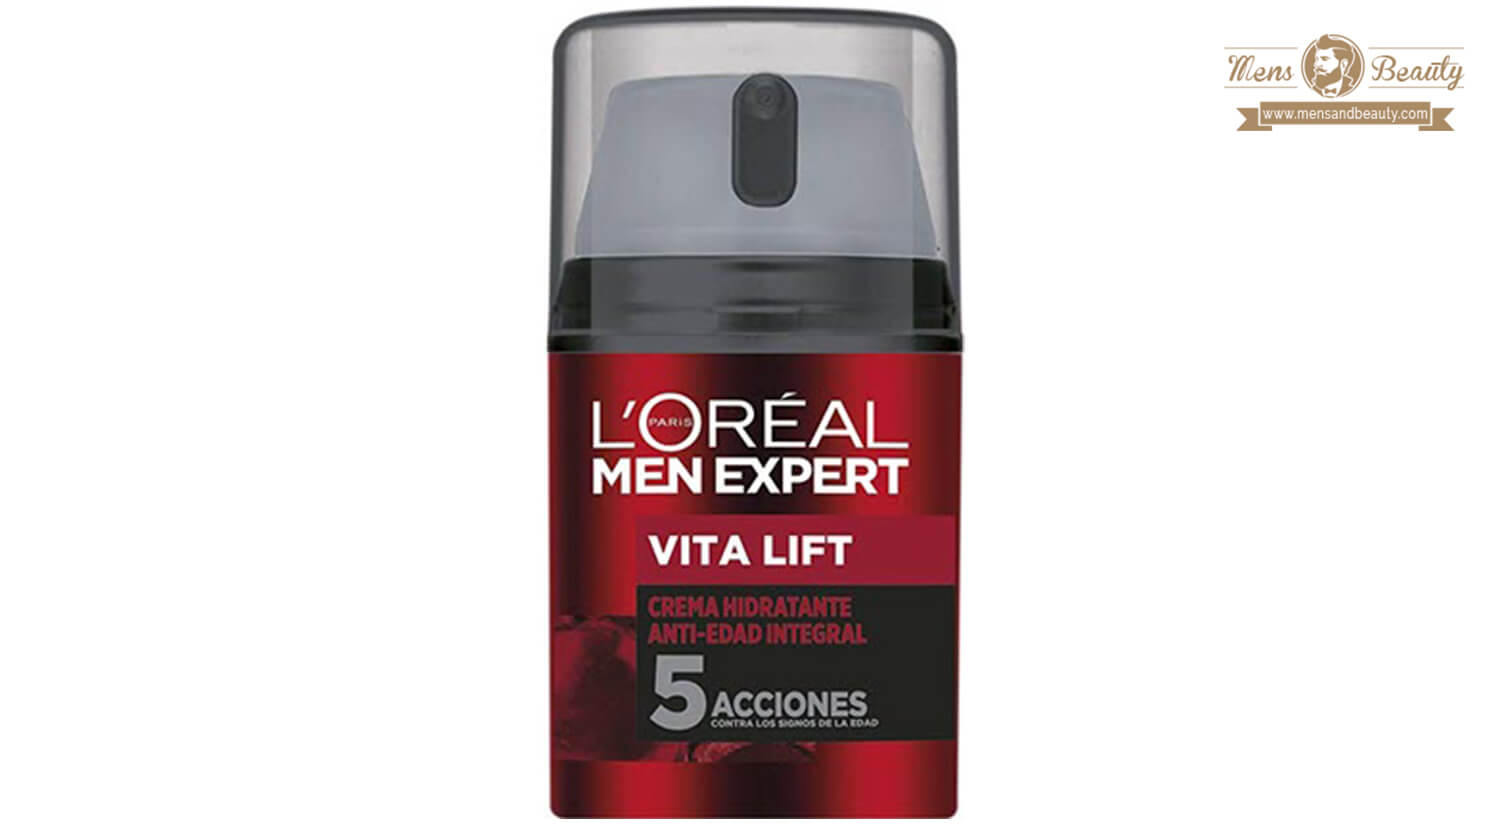 mejores productos para hombre loreal men expert crema hidratante antiedad integral vita lift 2